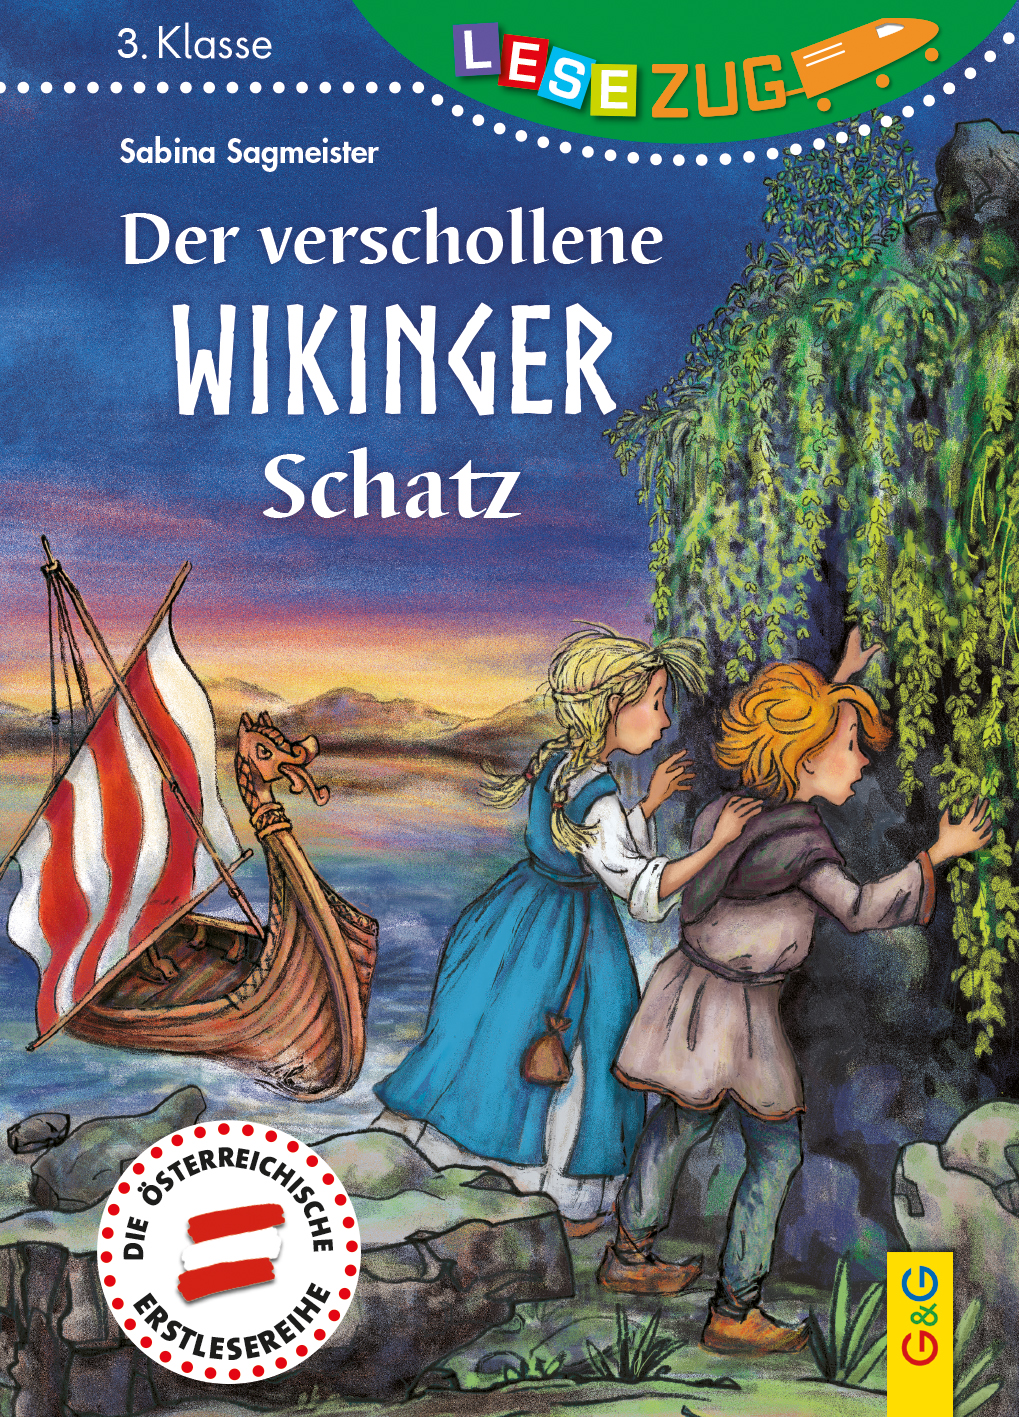 Cover_Der verschollene Wikinger-Schatz.indd